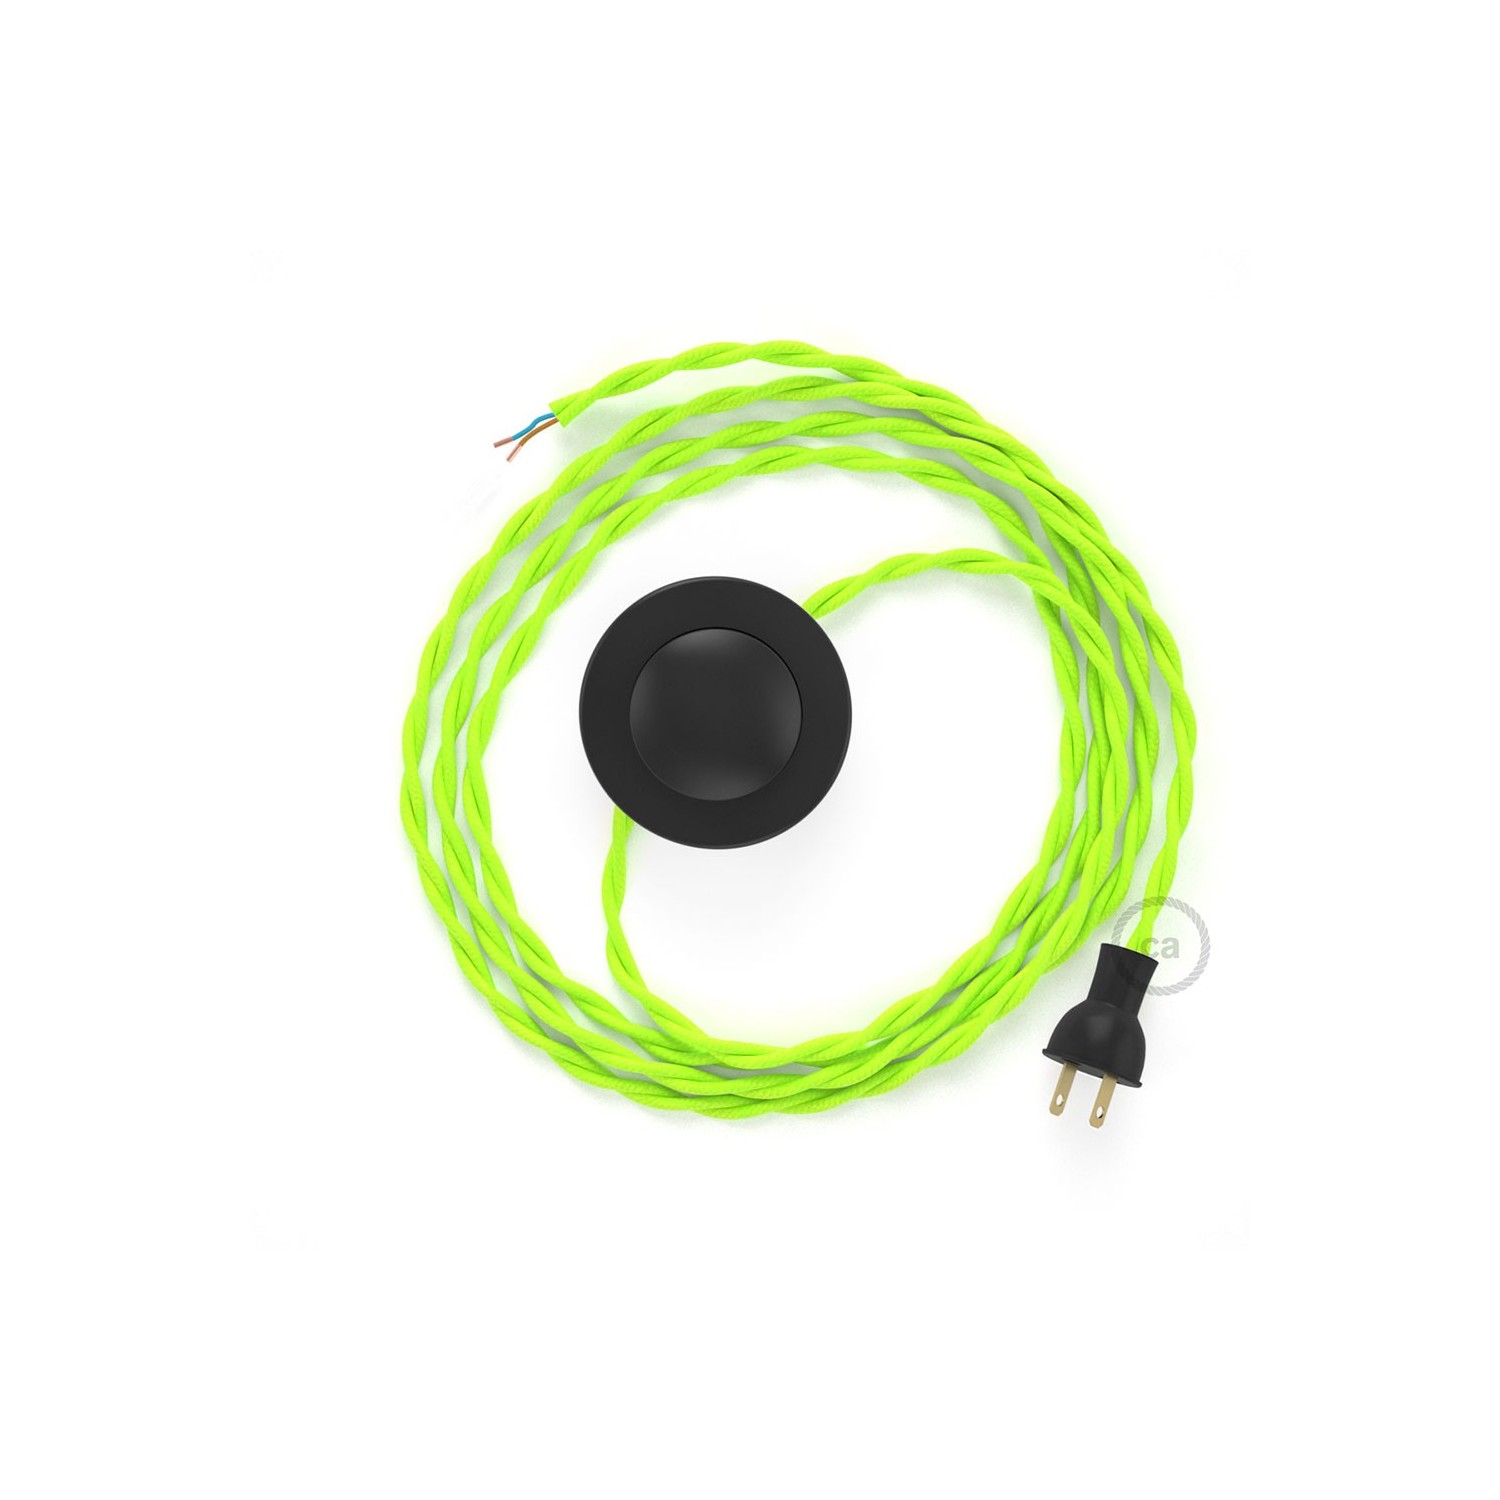 Cableado para lámpara de piso, cable TF10 Rayón Amarillo Fluo 3 m. Elige tu el color de la clavija y del interruptor!